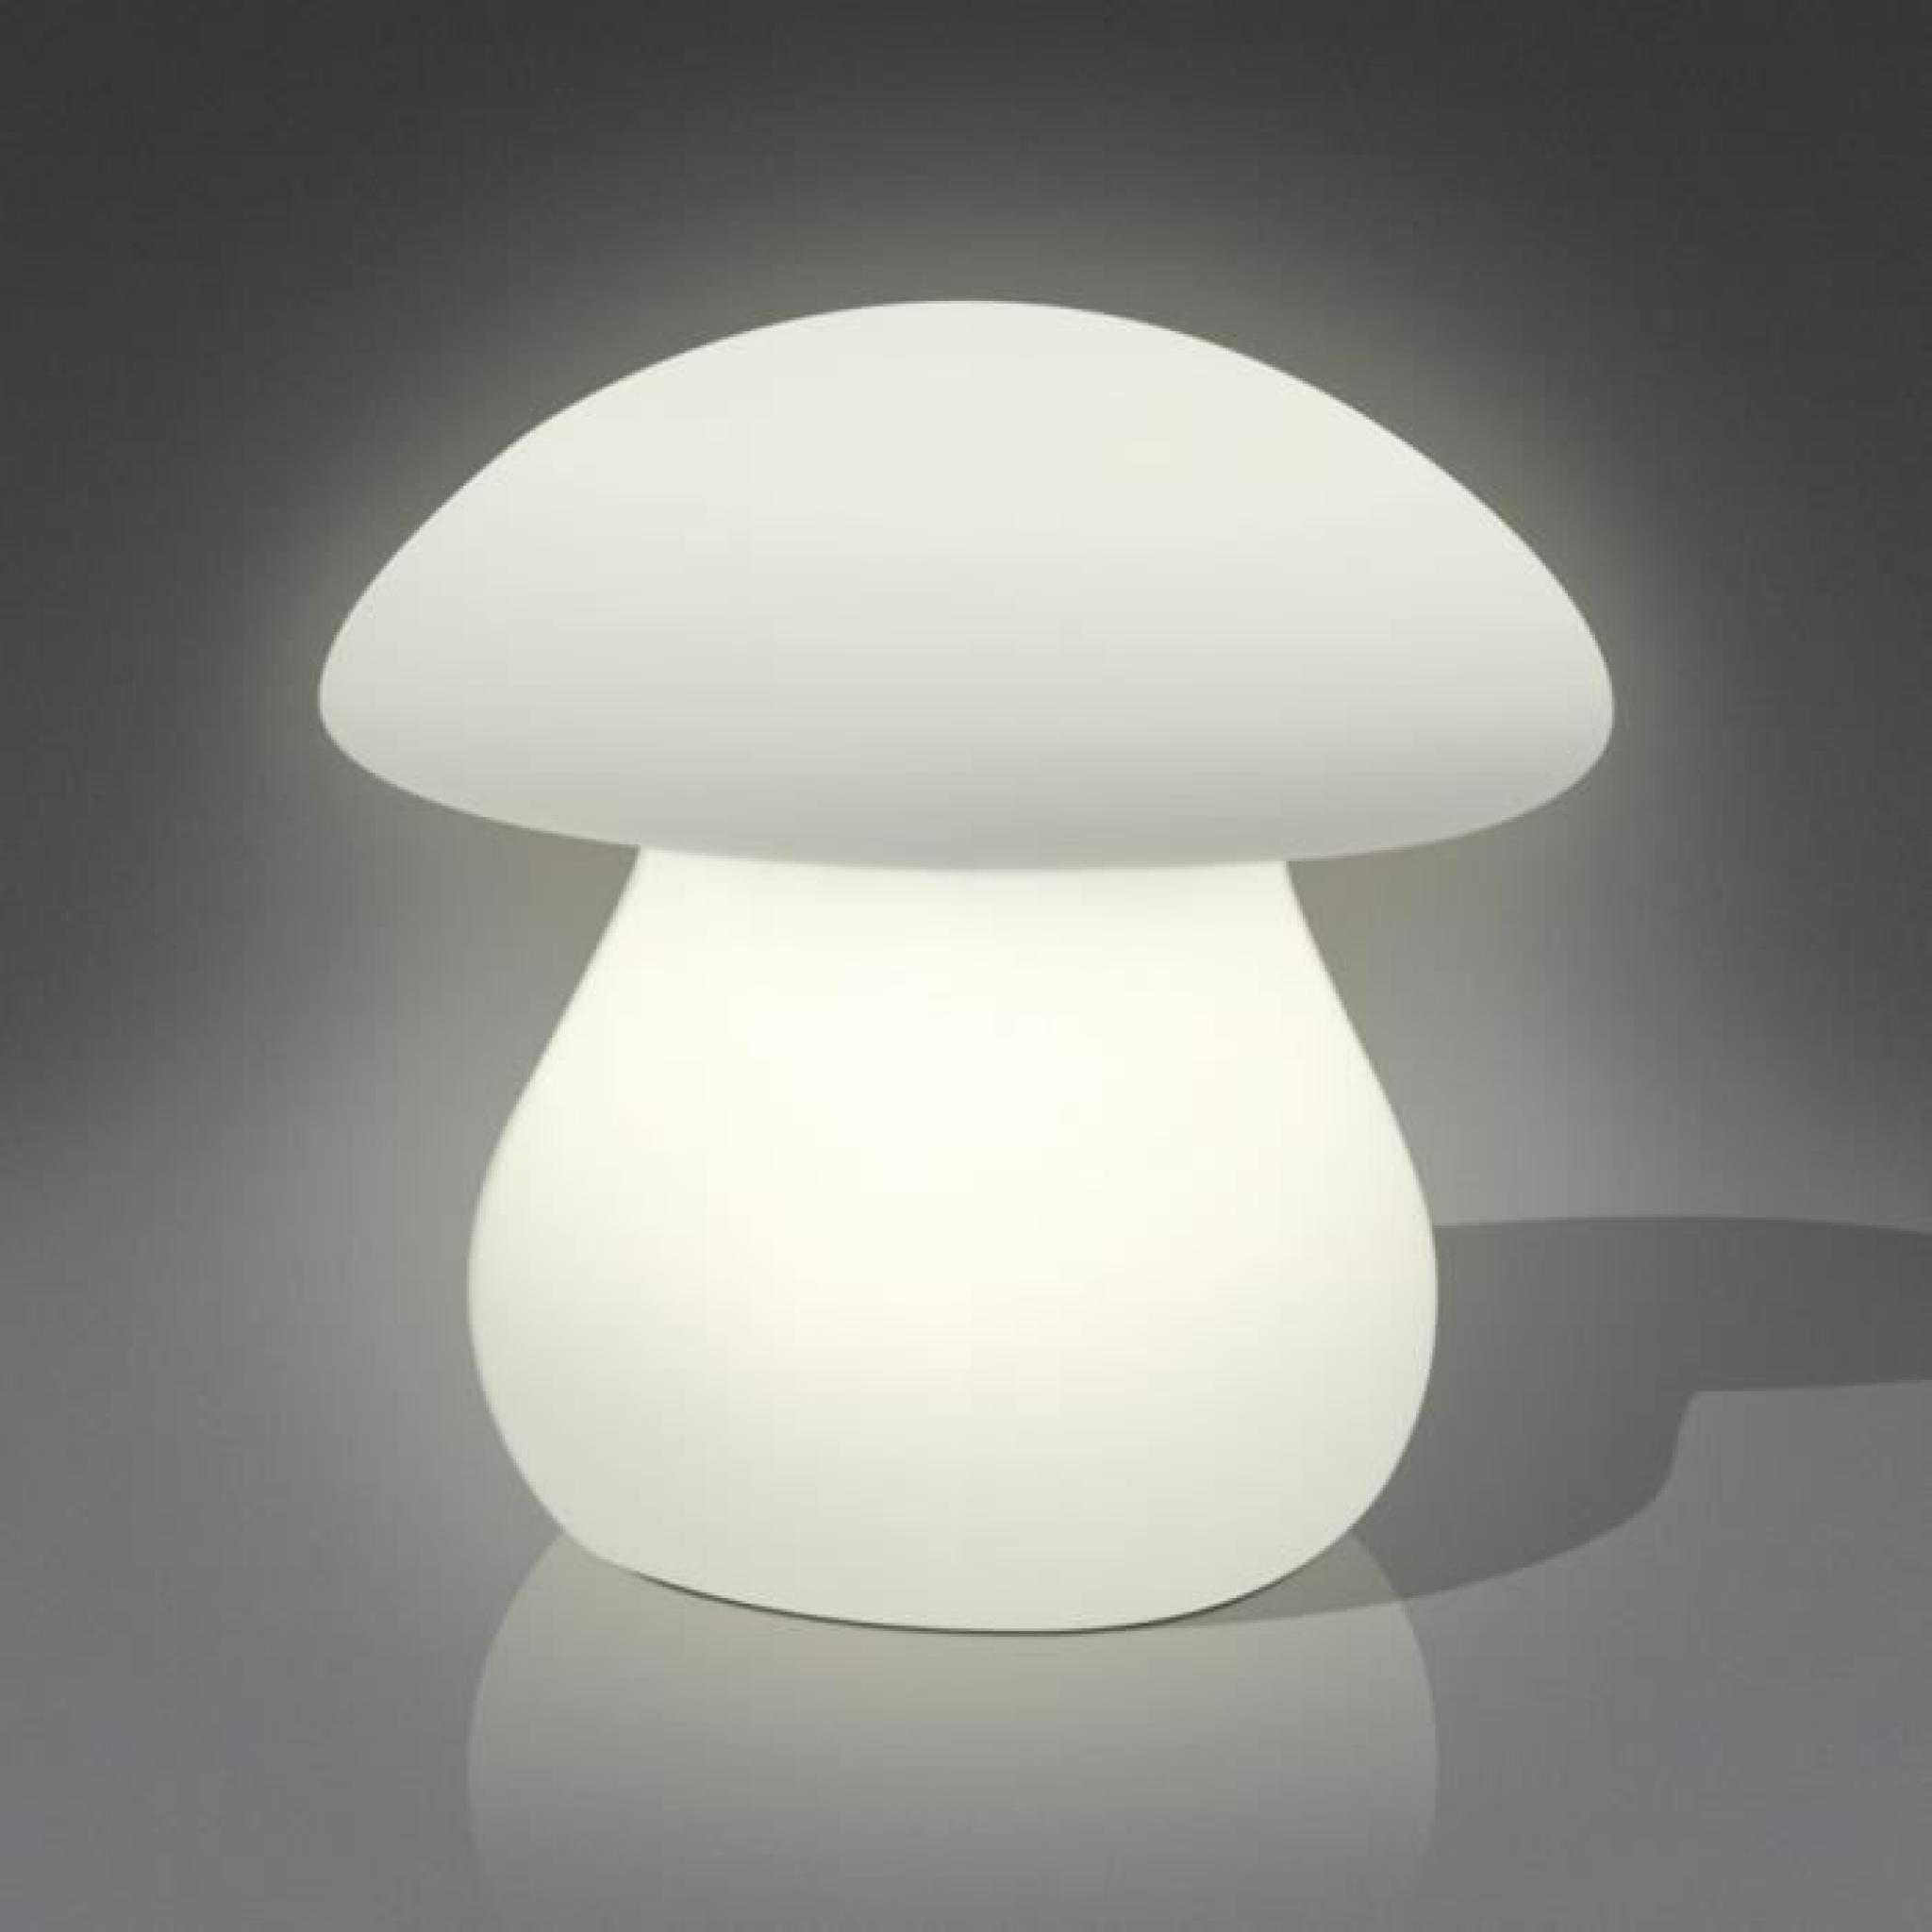 Champignon Lampe d'interieur avec la forme de champignon avec coque en polyethylene et connexion traditionnelle pour alimentation...